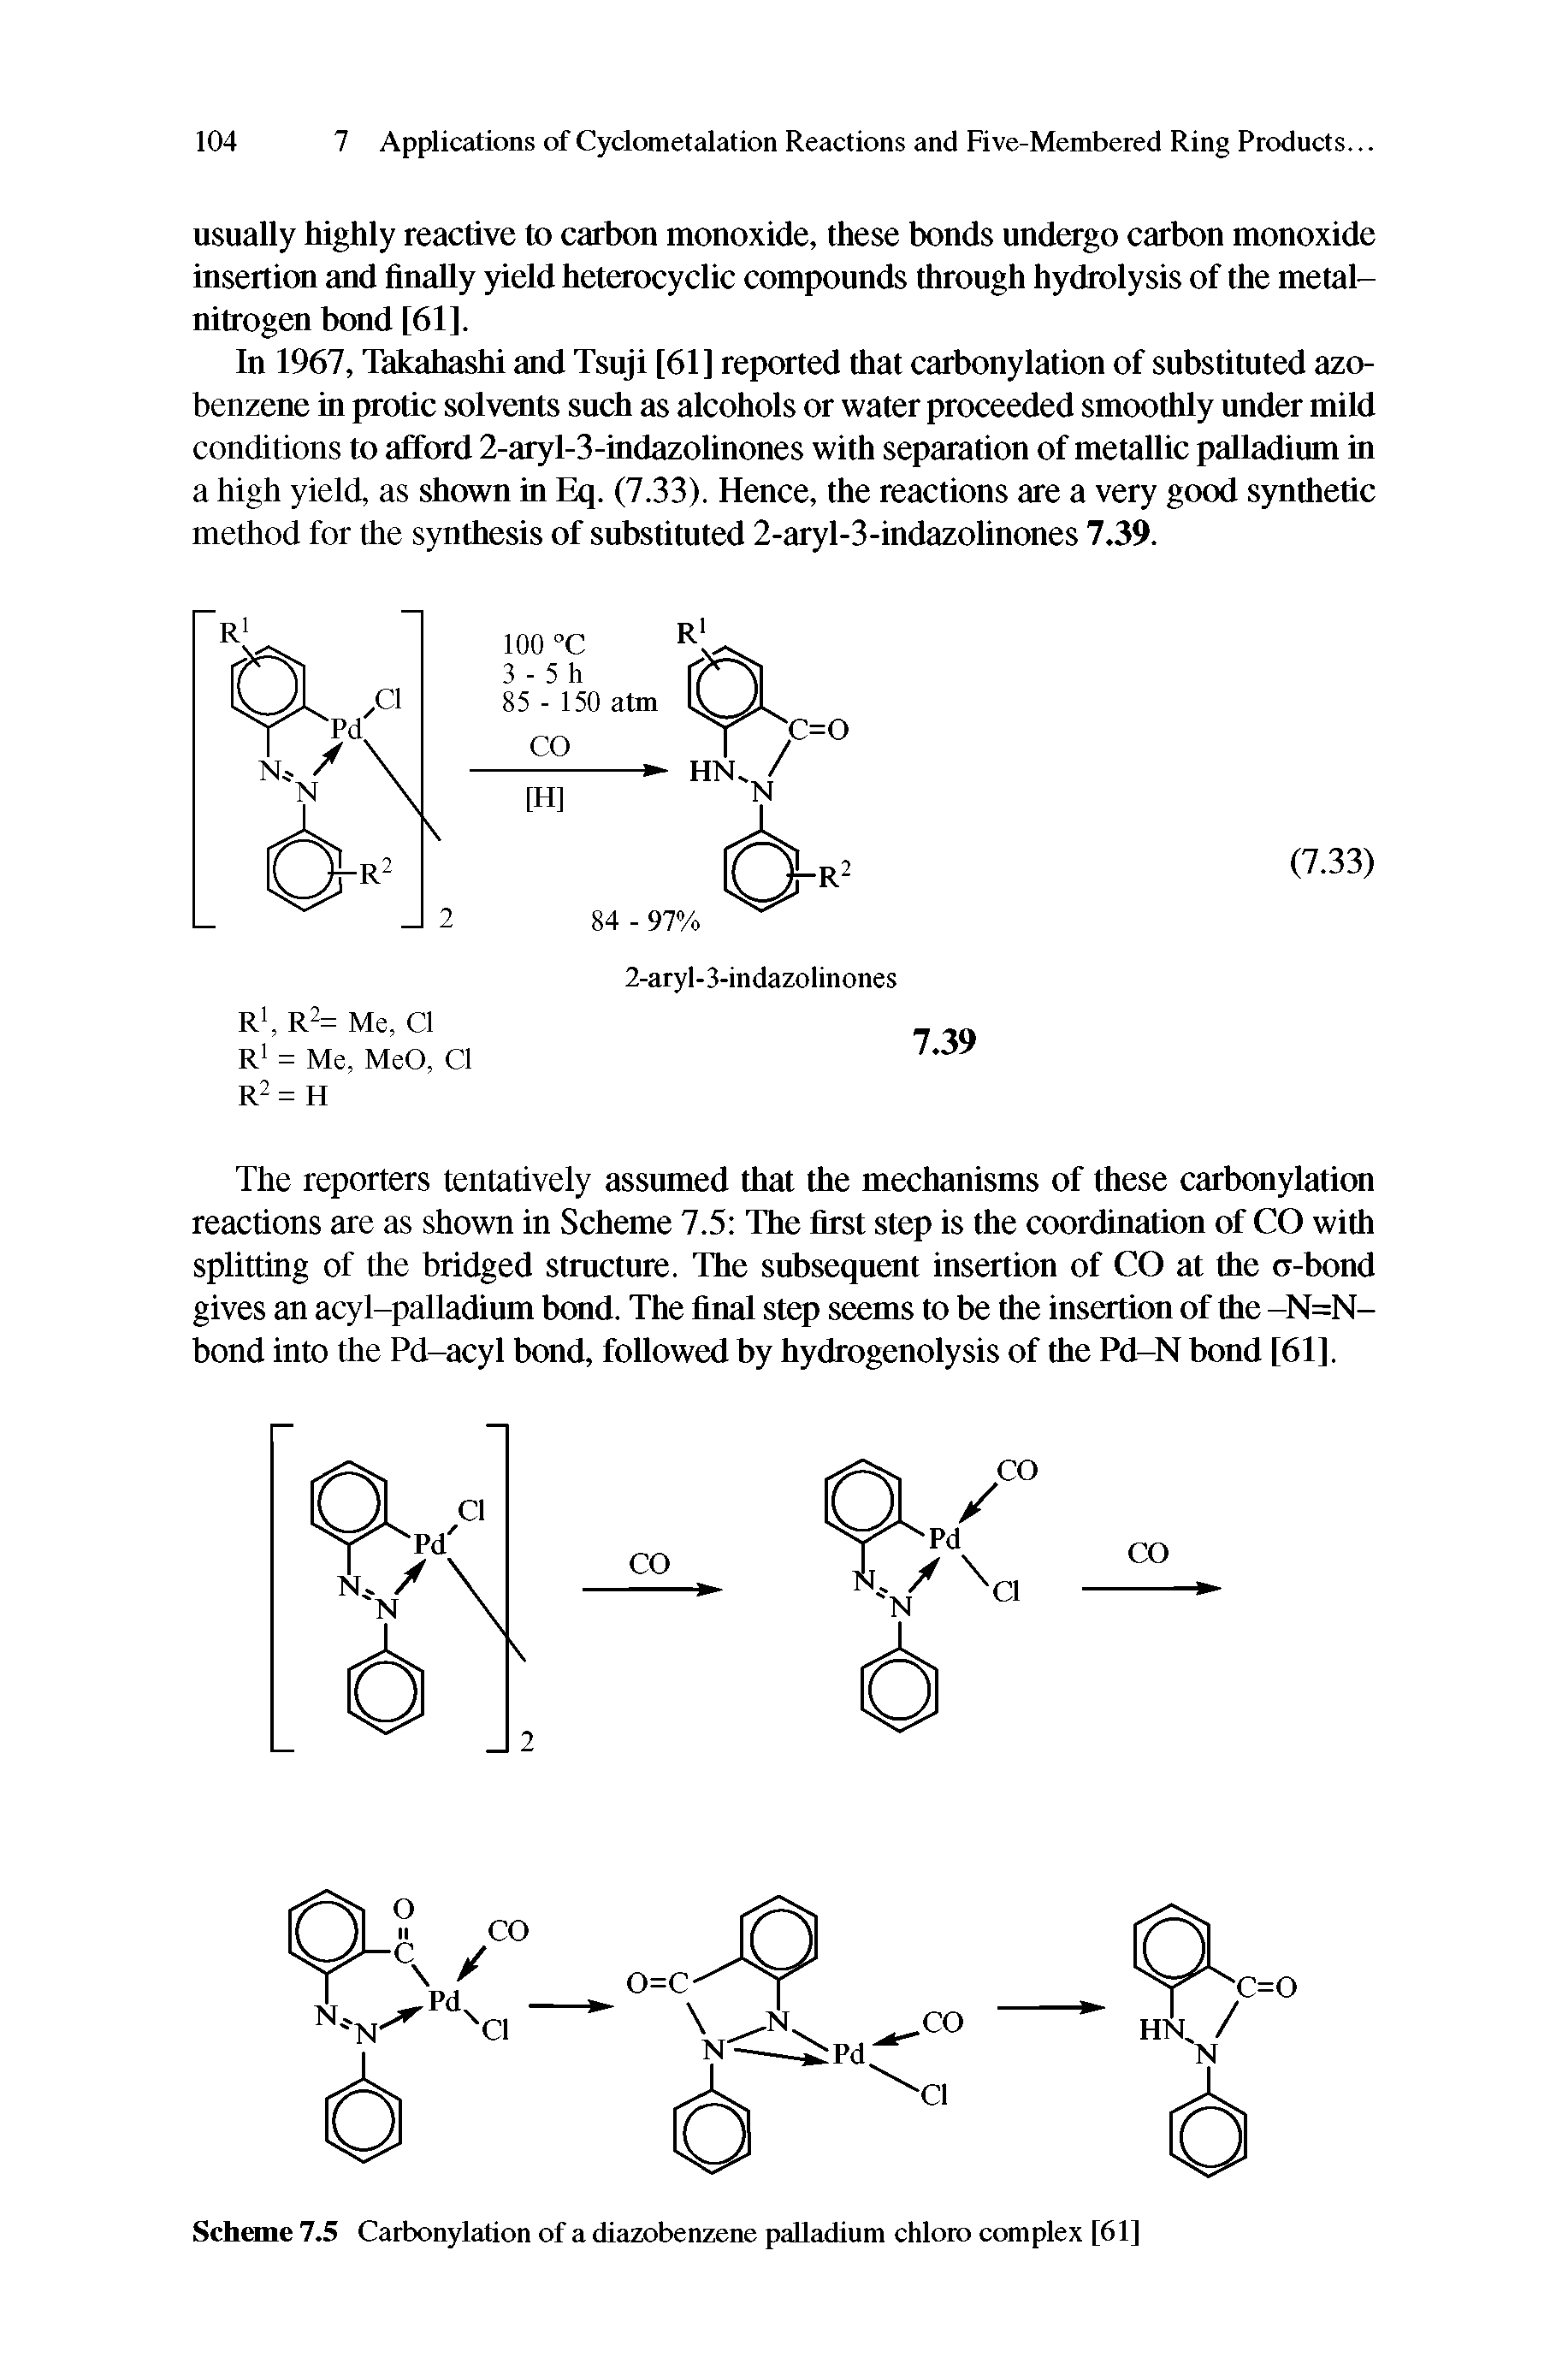 Scheme 7.5 Carbonylation of a diazobenzene palladium chloro complex [61]...